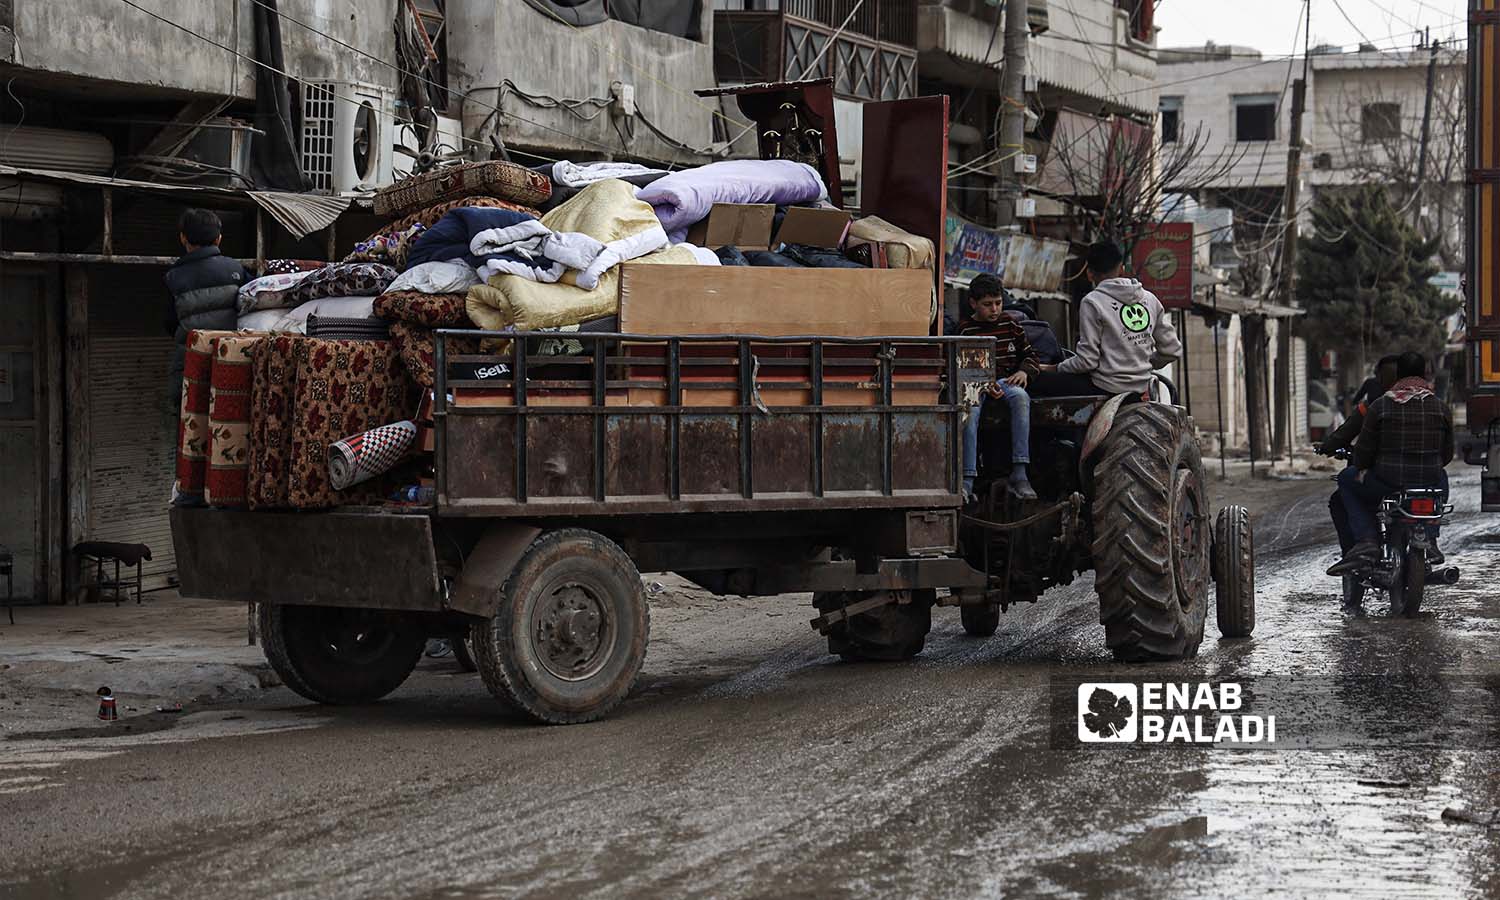  شوارع مدينة جنديرس بريف حلب بعد الزلزال الذي ضرب شمالي غربي سوريا - 24شباط 2023 (عنب بلدي/ أمير خربطلي)